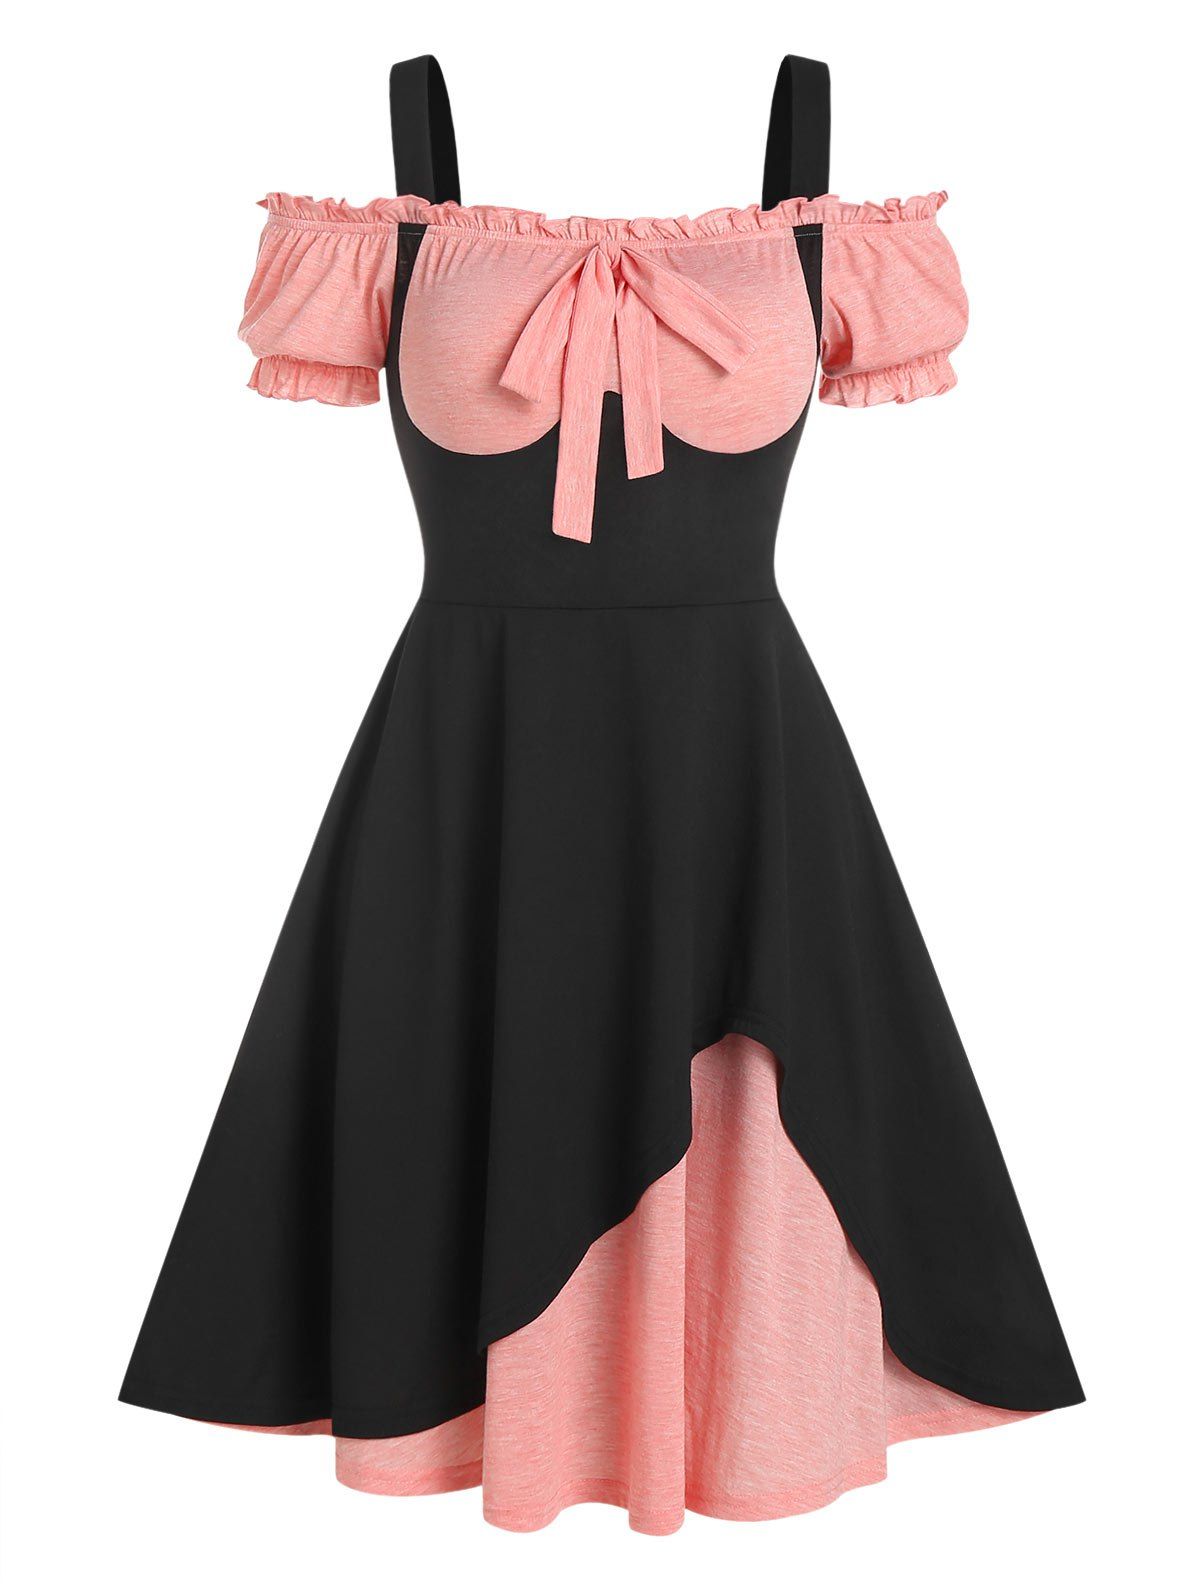 Bowknot Cold Shoulder Faux Twinset Dress - BLACK XL